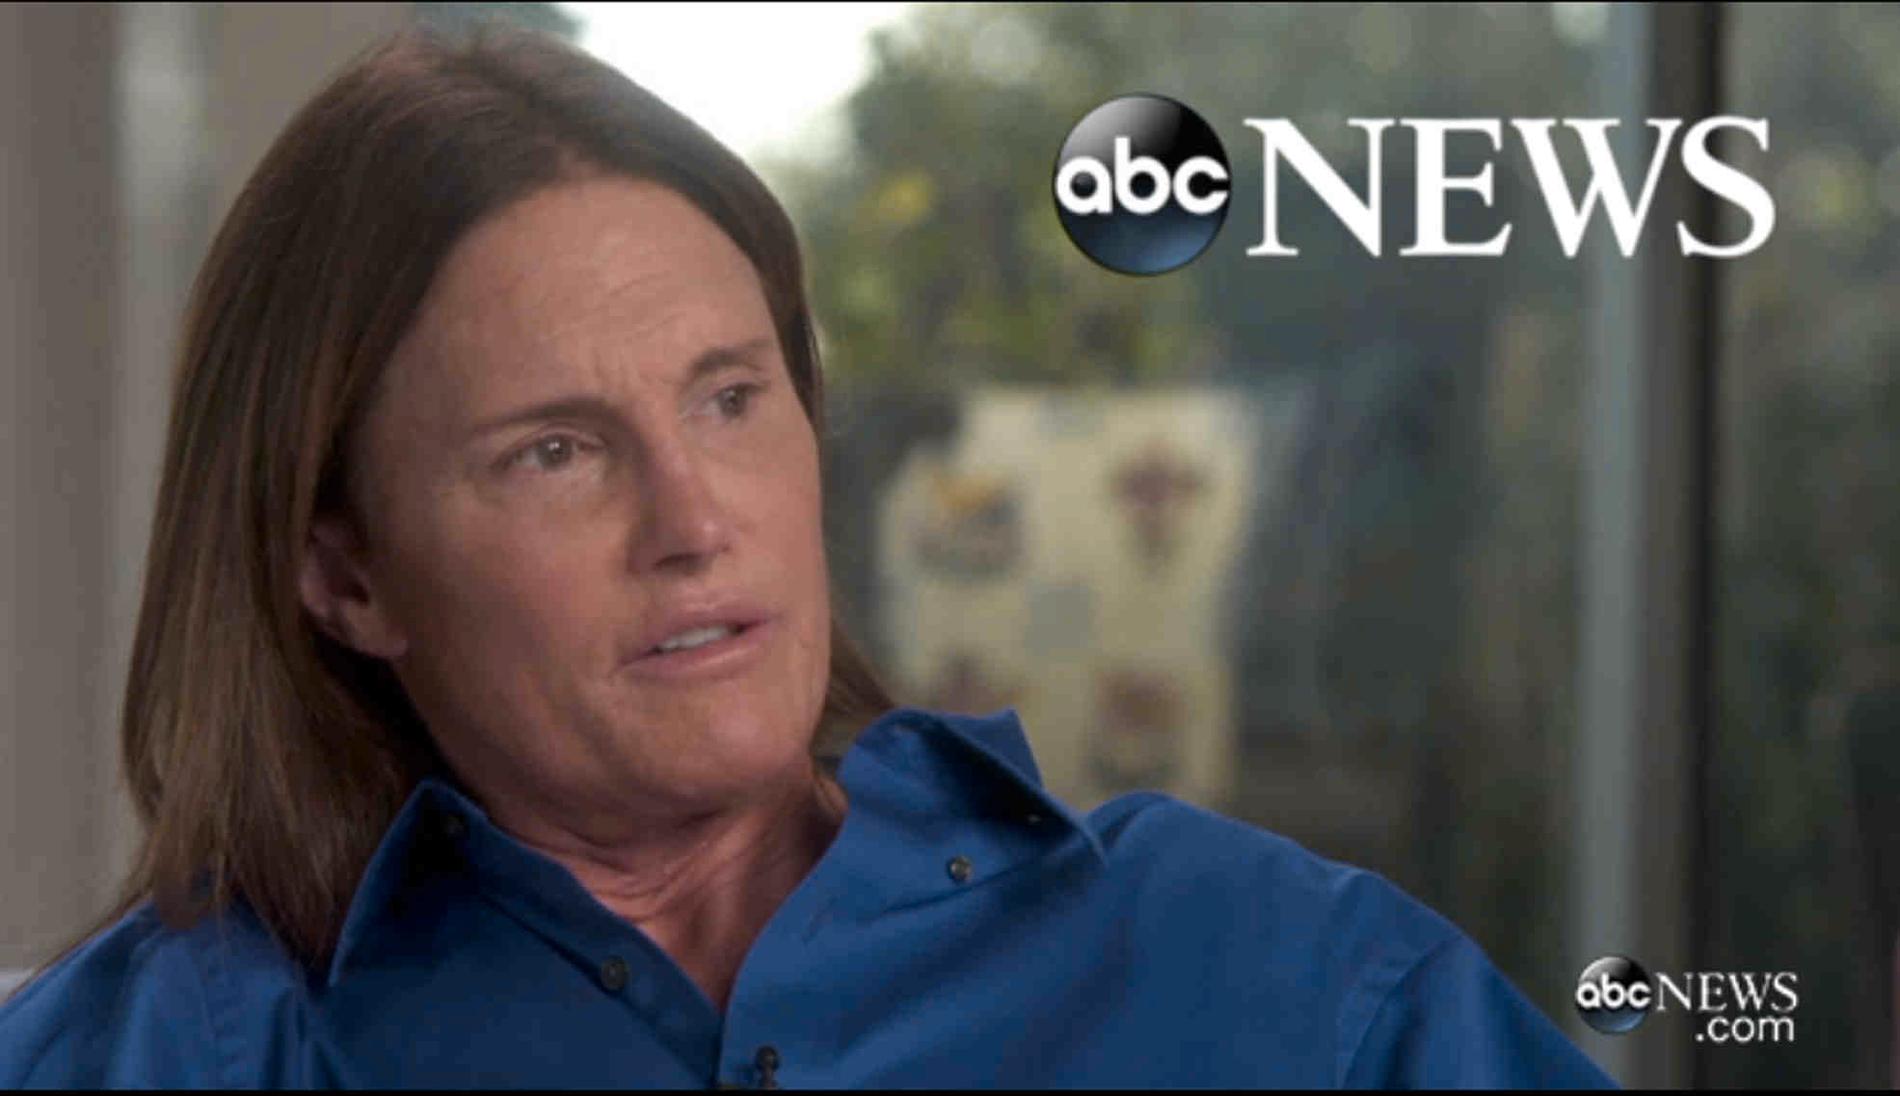 Bruce Jenner intervjuades av Diane Sawyer